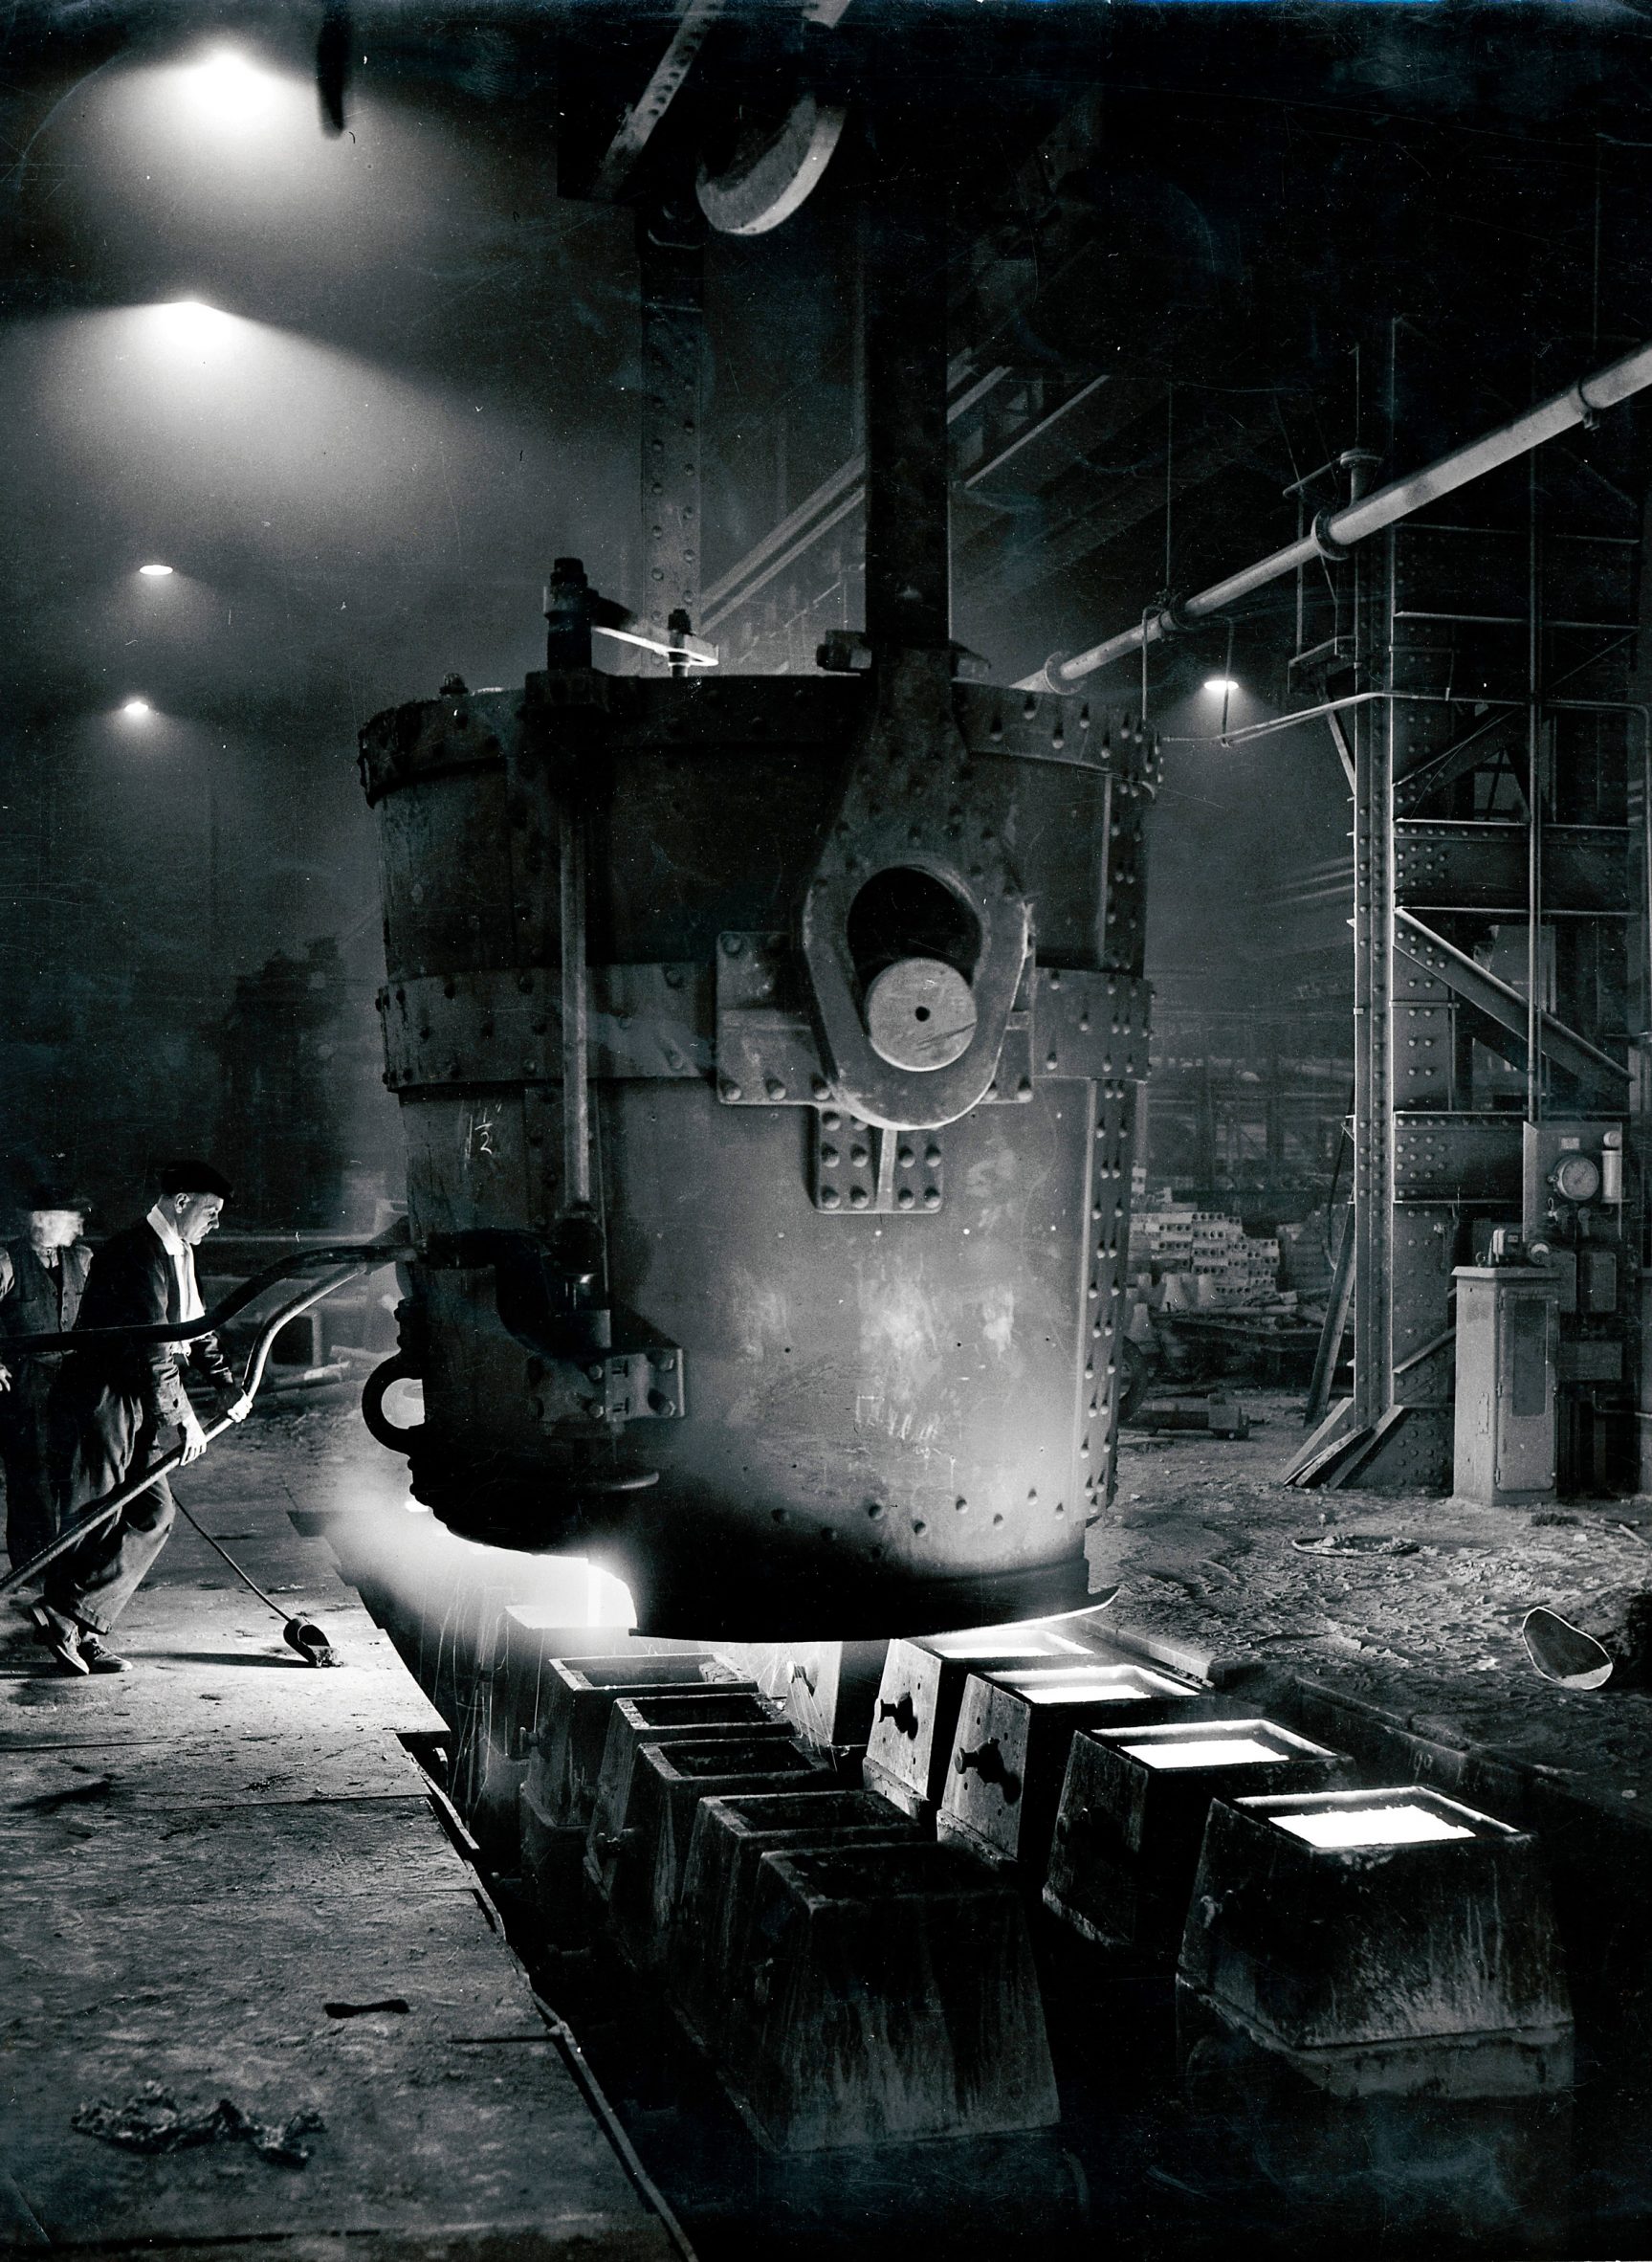 Steelworks, Sheffield, UK